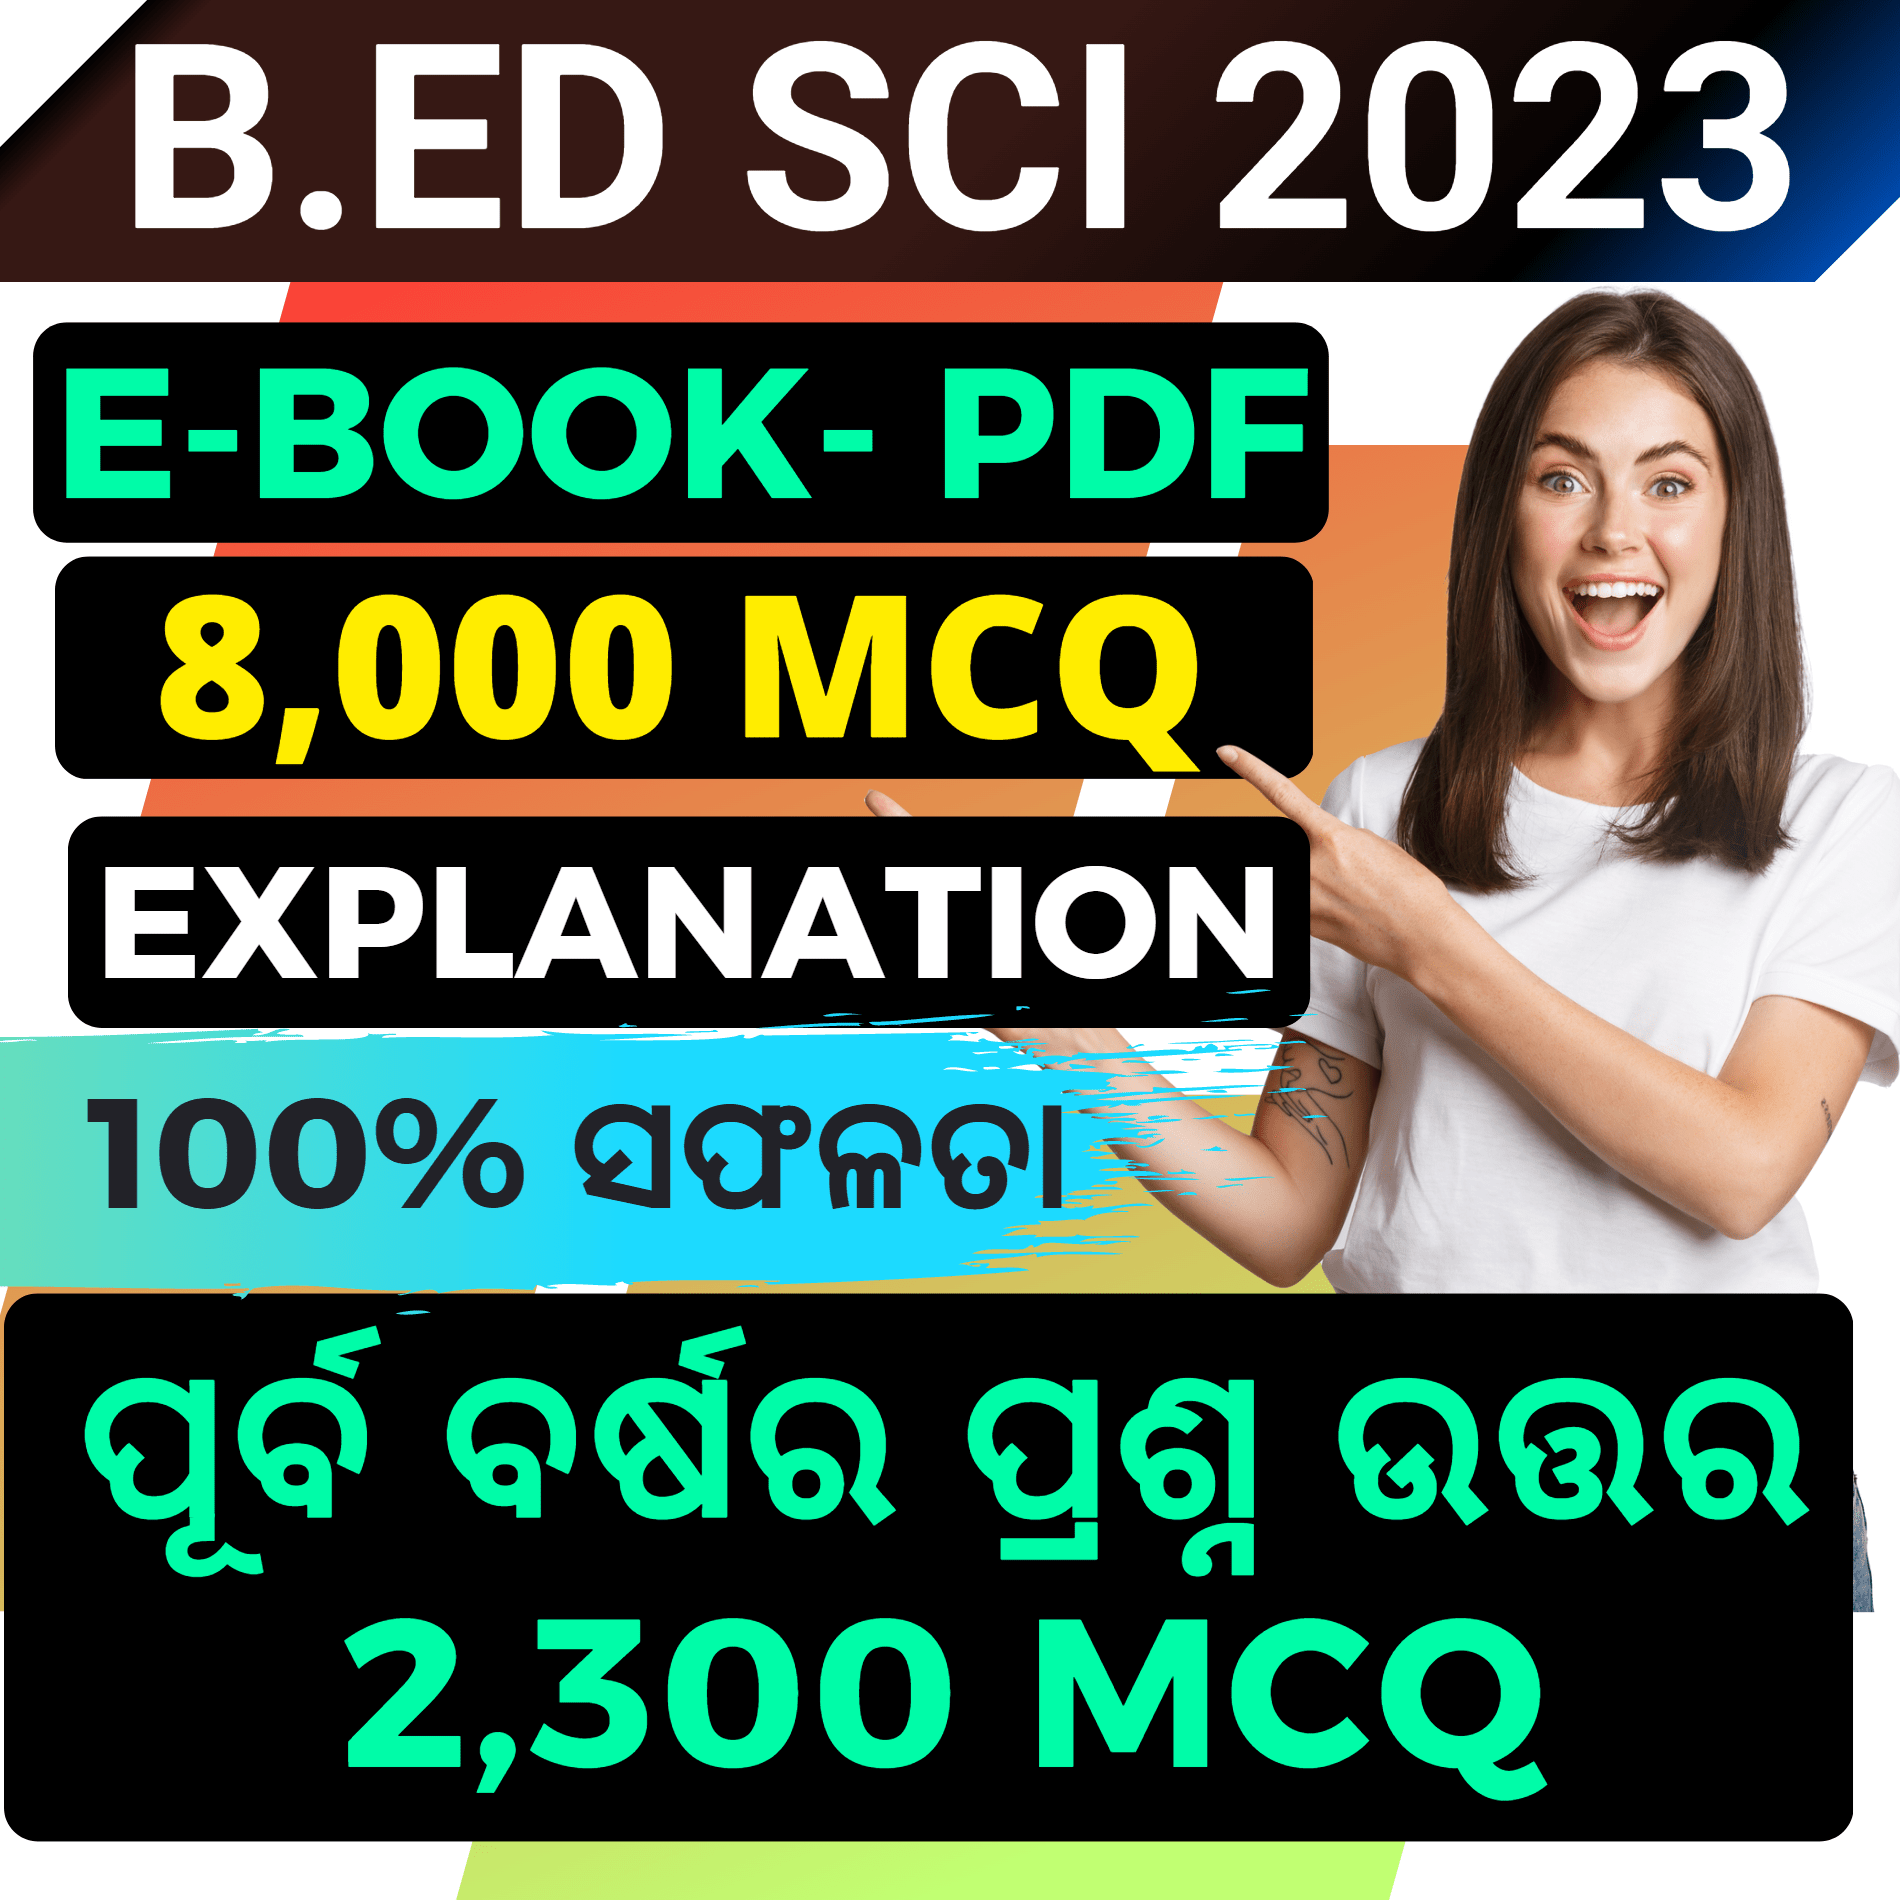 Odisha Bed Apply 2023